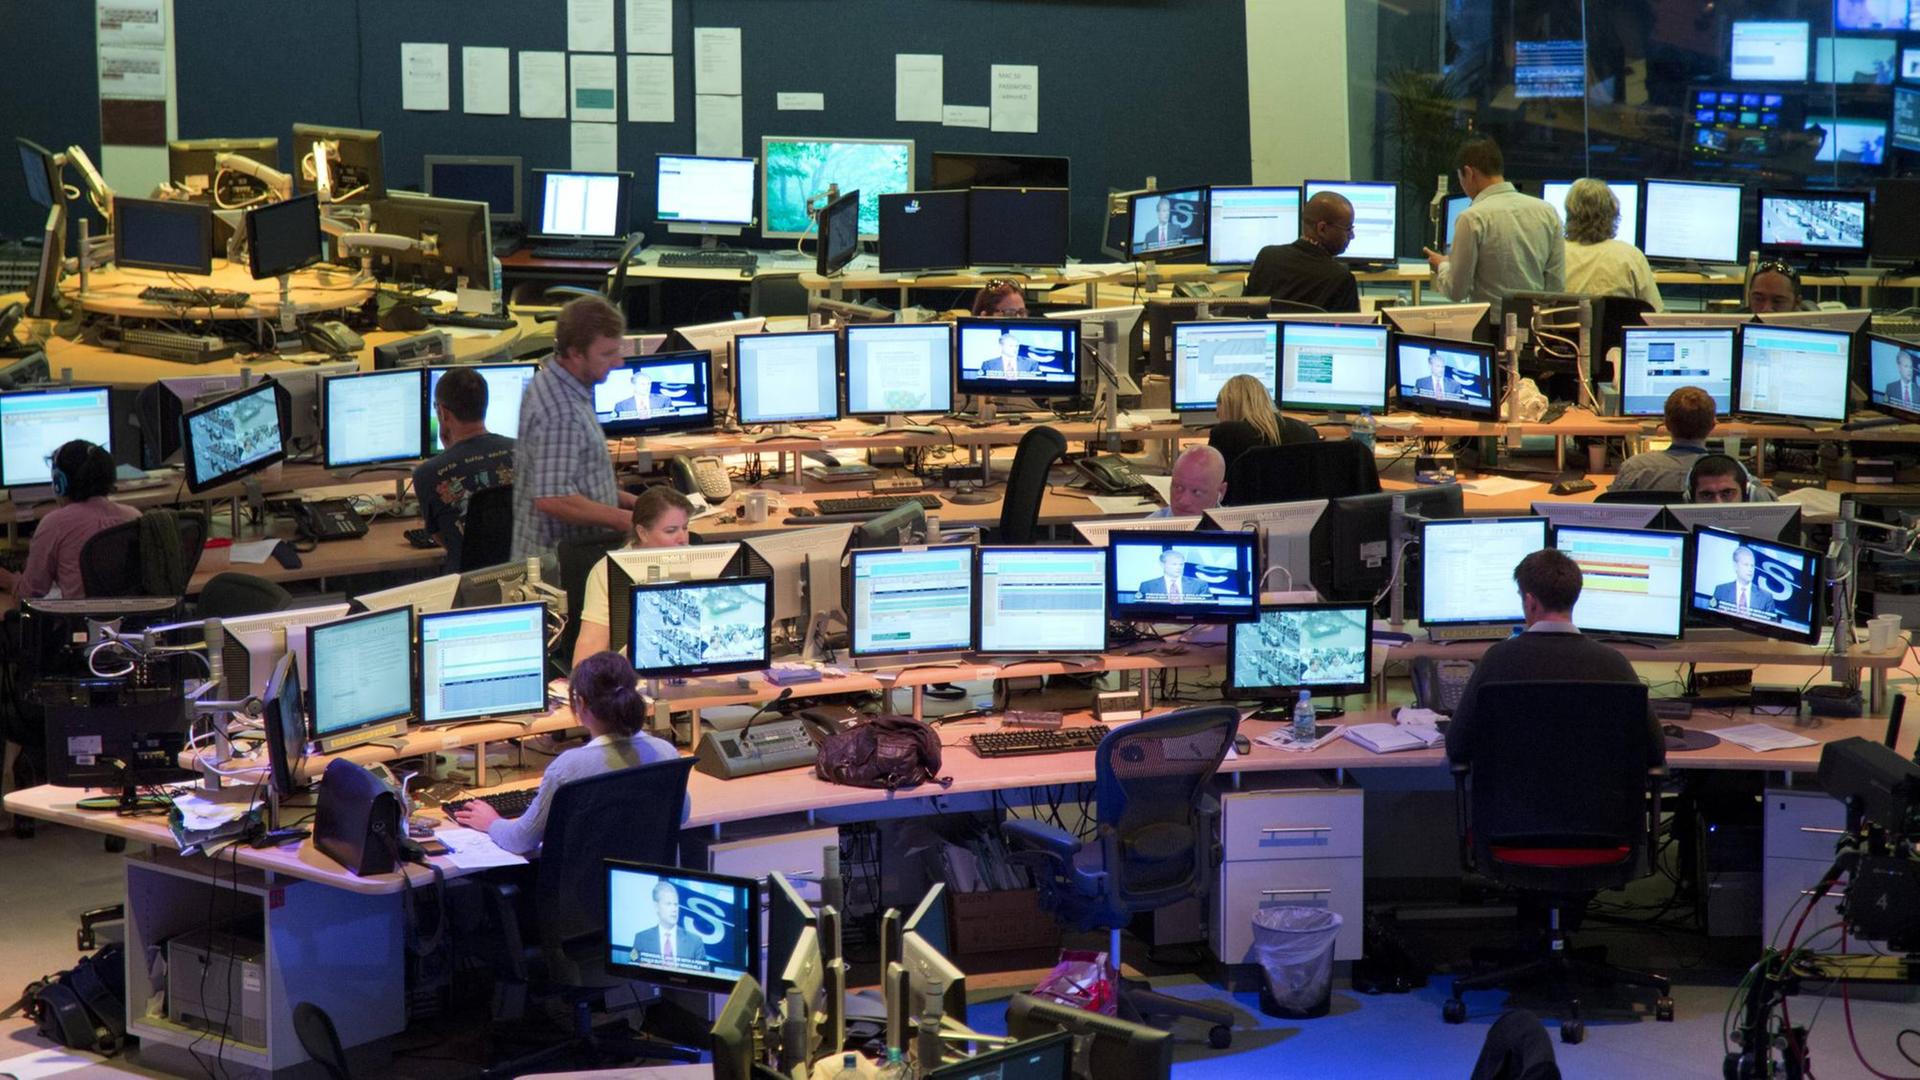 Symbolbild: Im Newsroom eines Fernsehsenders sitzen Journalisten hinter Bildschirmen und arbeiten.